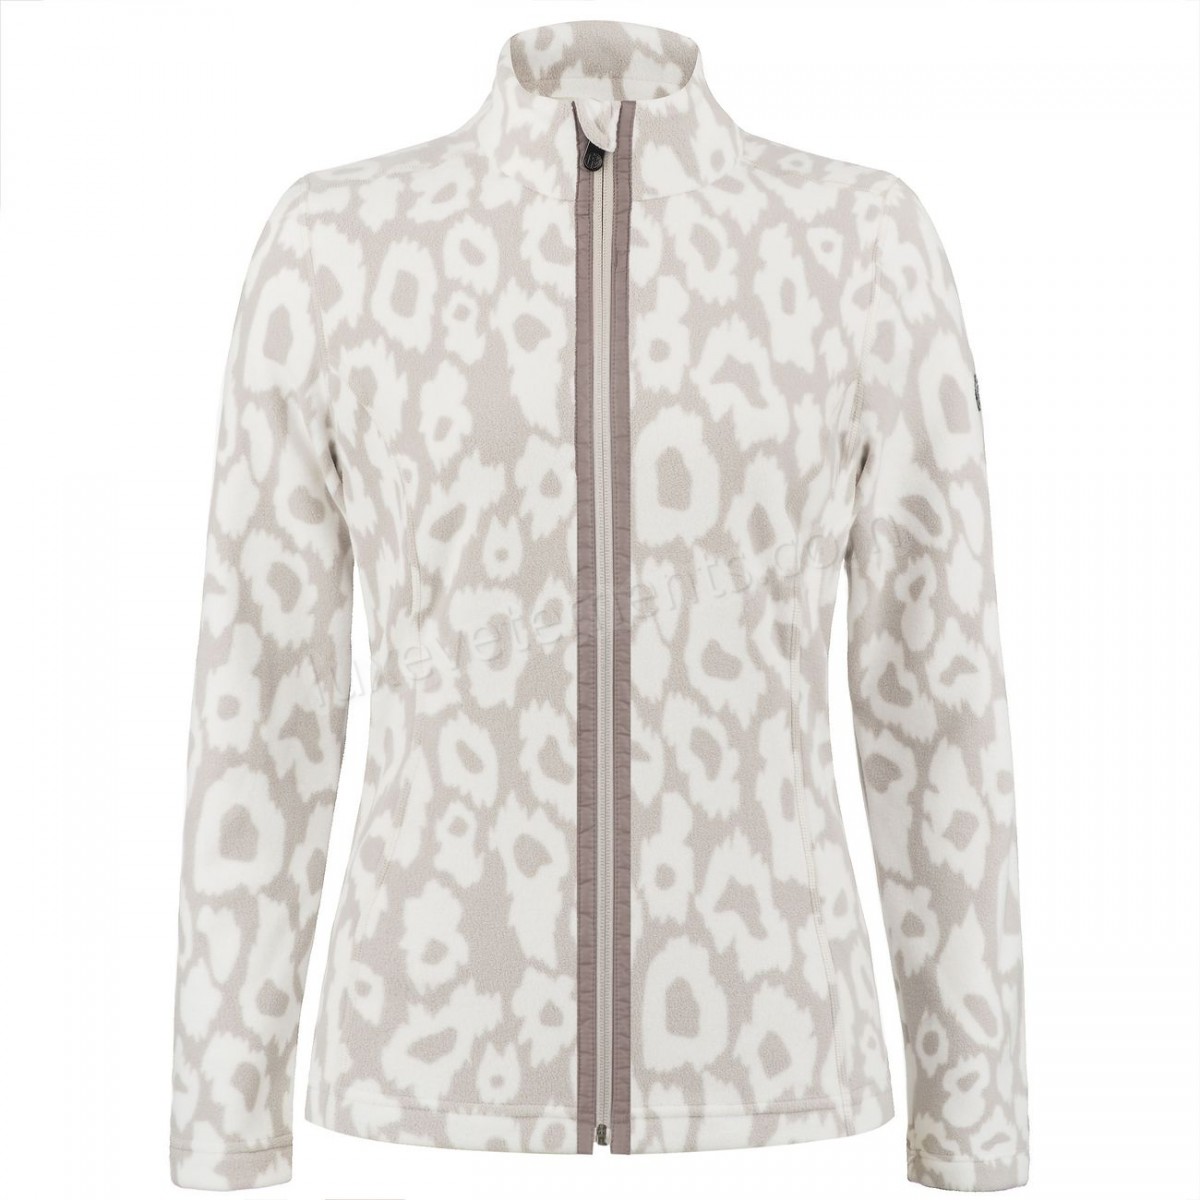 Poivre Blanc-Sports d'hiver femme POIVRE BLANC Veste Polaire Poivre Blanc Fleece Jacket 1500 Panther Grey Femme Vente en ligne - -5